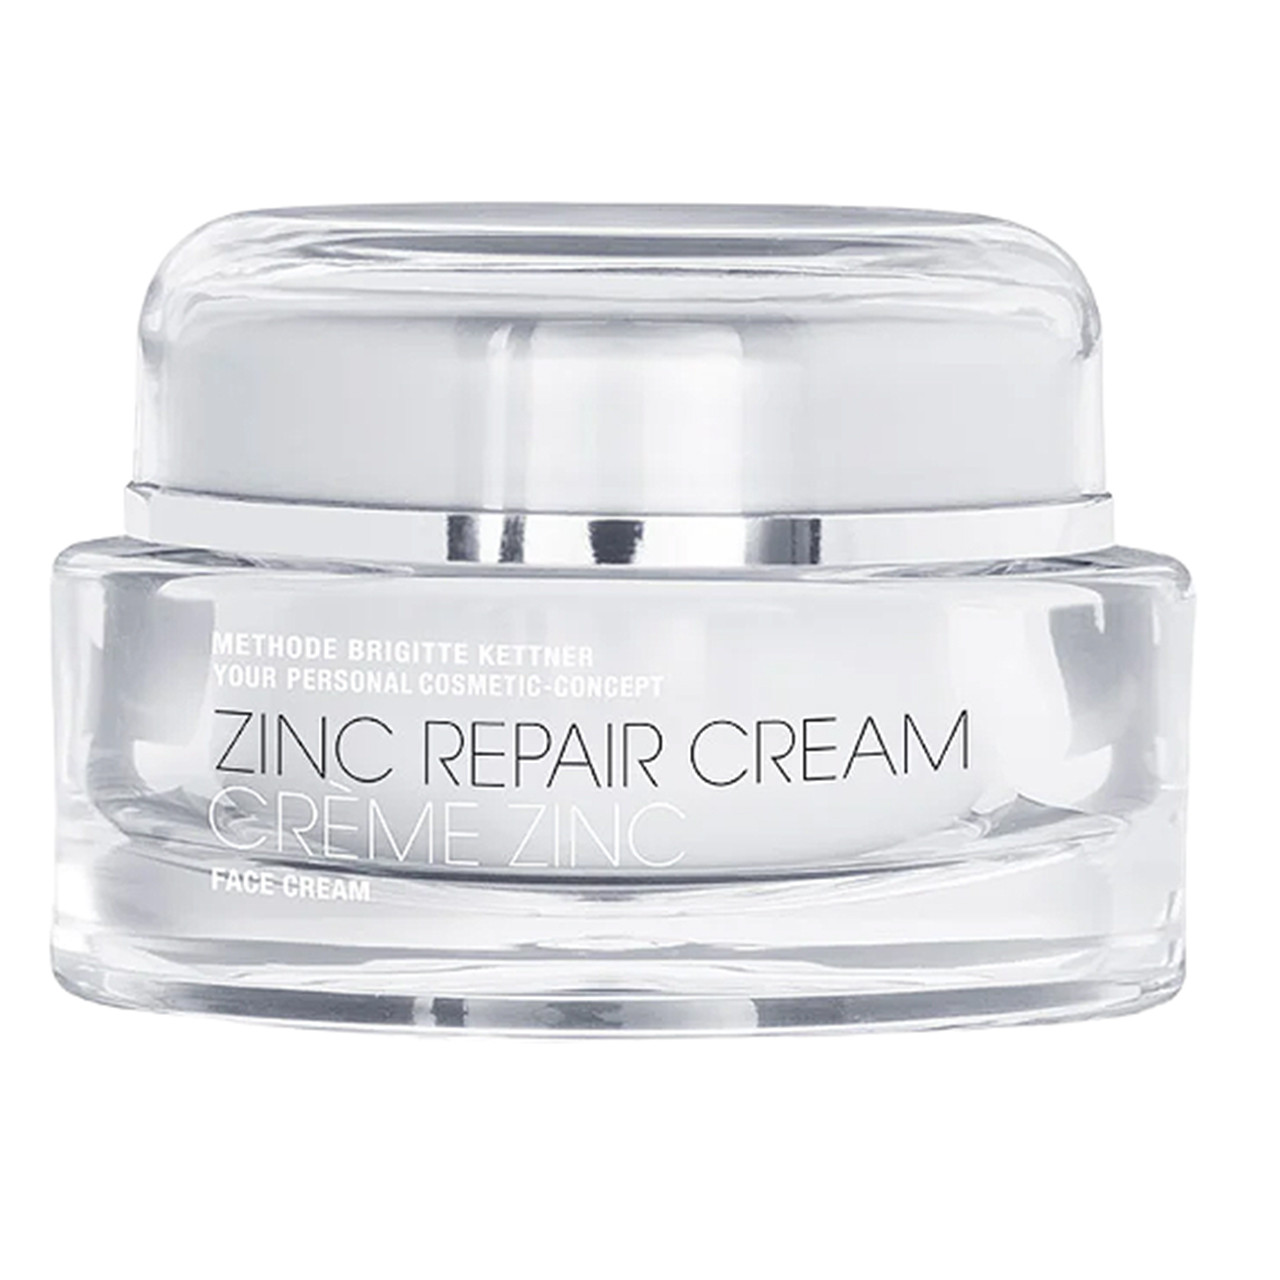 MBK Skincare Zinc Repair Cream - 1 oz